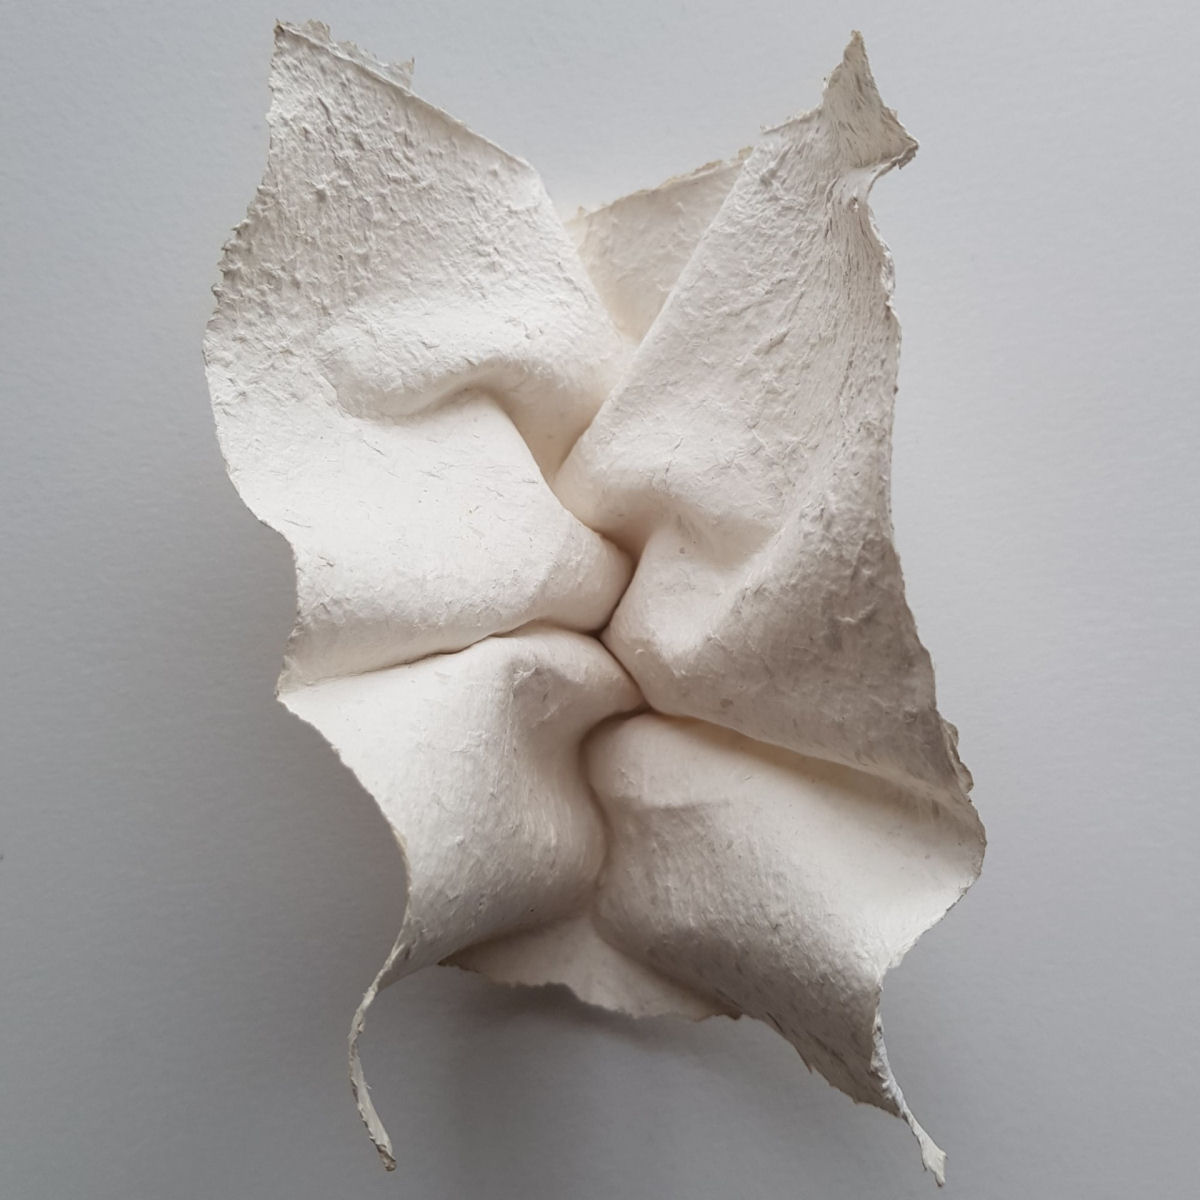 Esculturas sensuais em simples folhas de papel sugerem momentos de intimidade 04